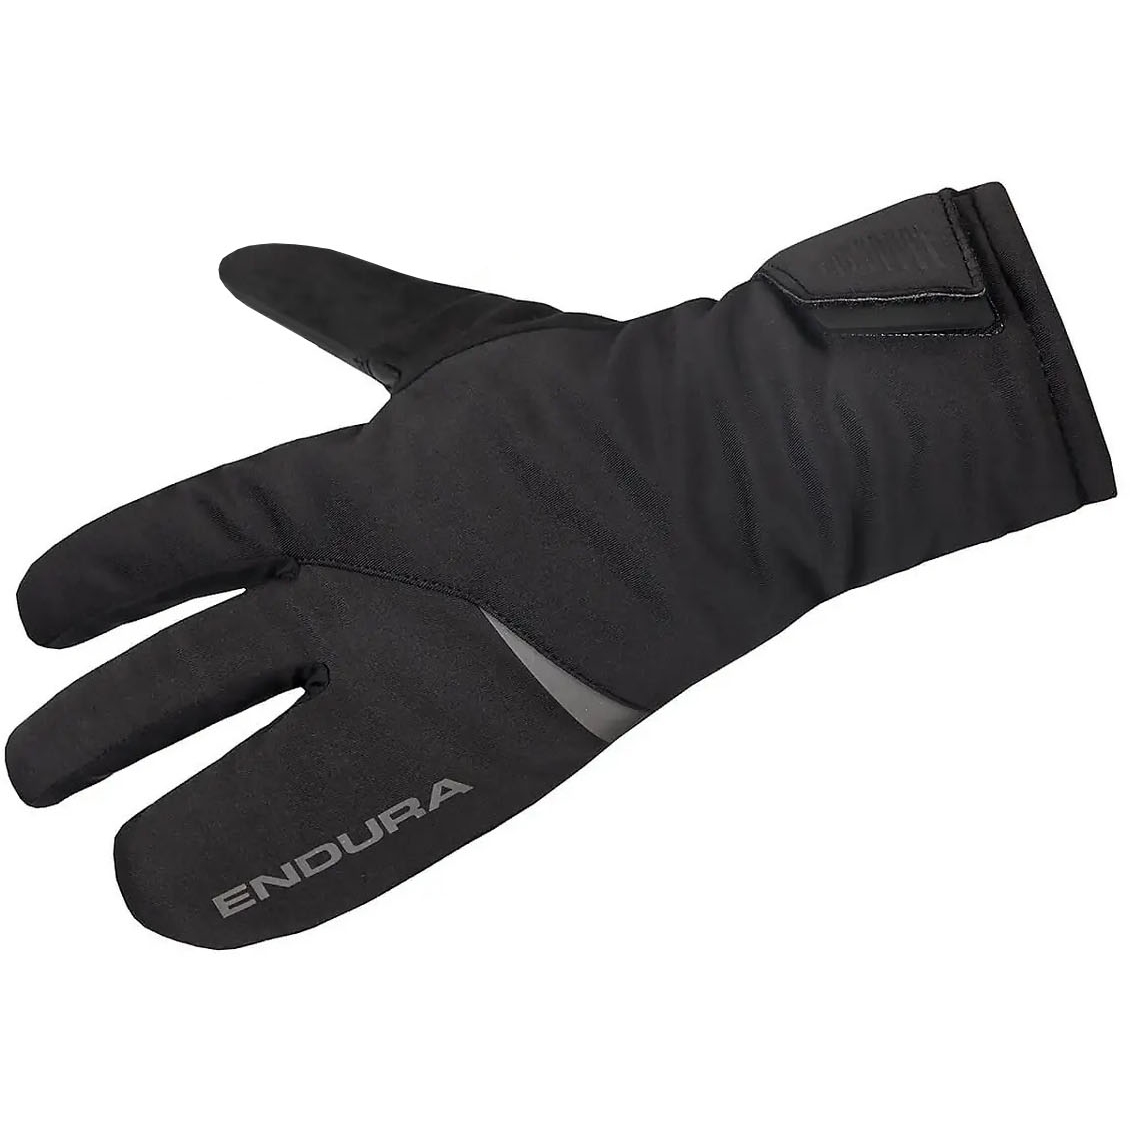 Produktbild von Endura Freezing Point Lobster Handschuh - schwarz